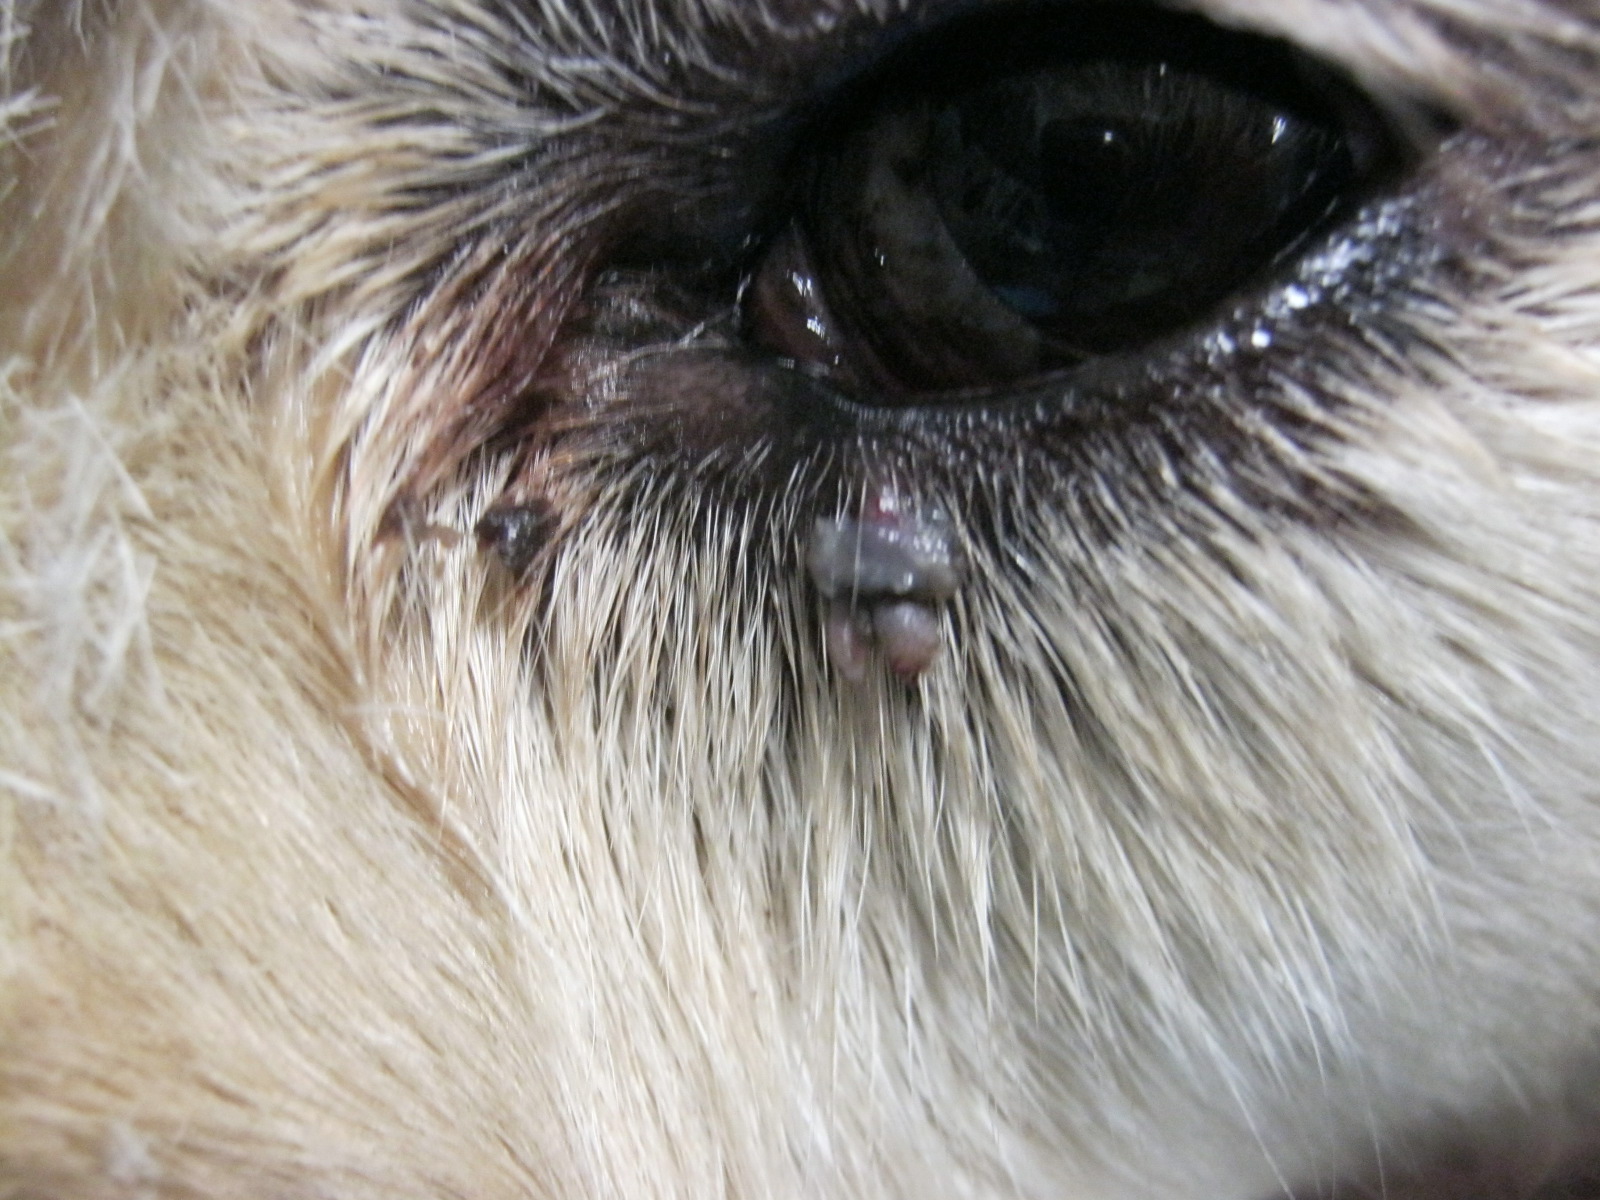 Kisebb duzzanat kutya szeme alatt- akár kullancsnak is nézhetjük!